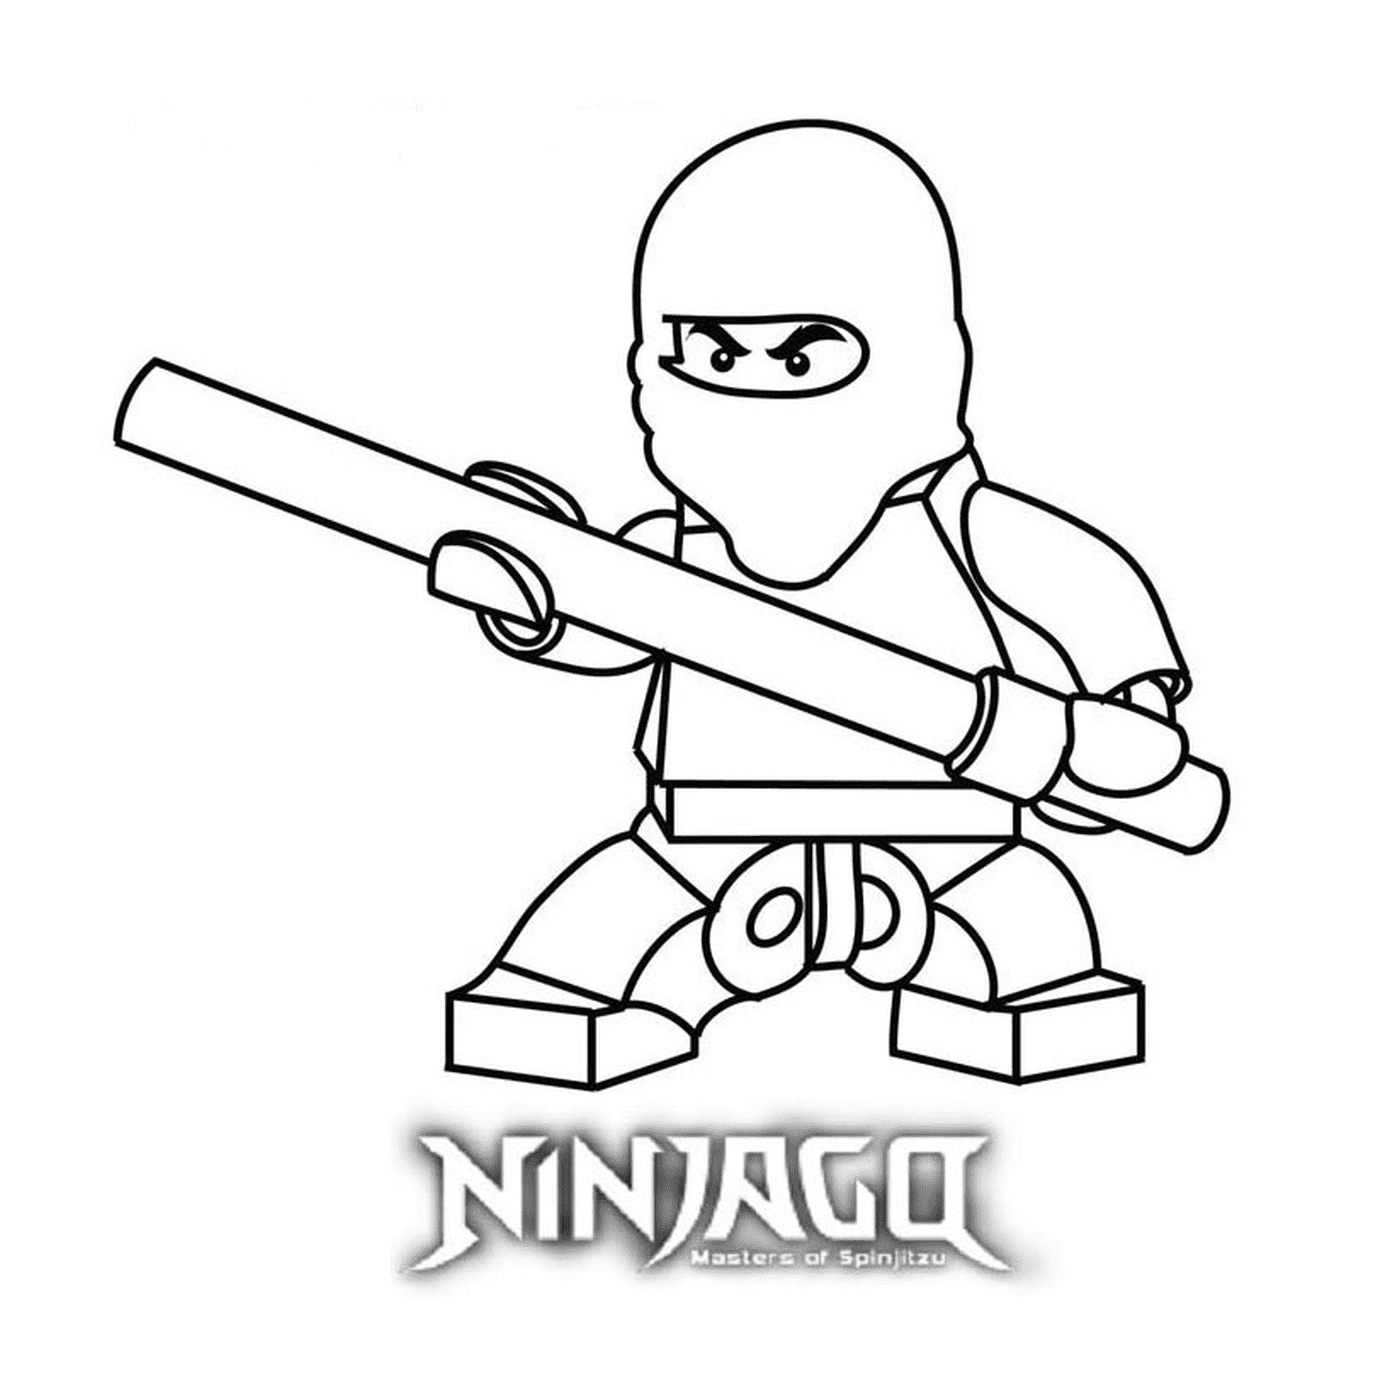  Lego Ninjago herunterladen und drucken 